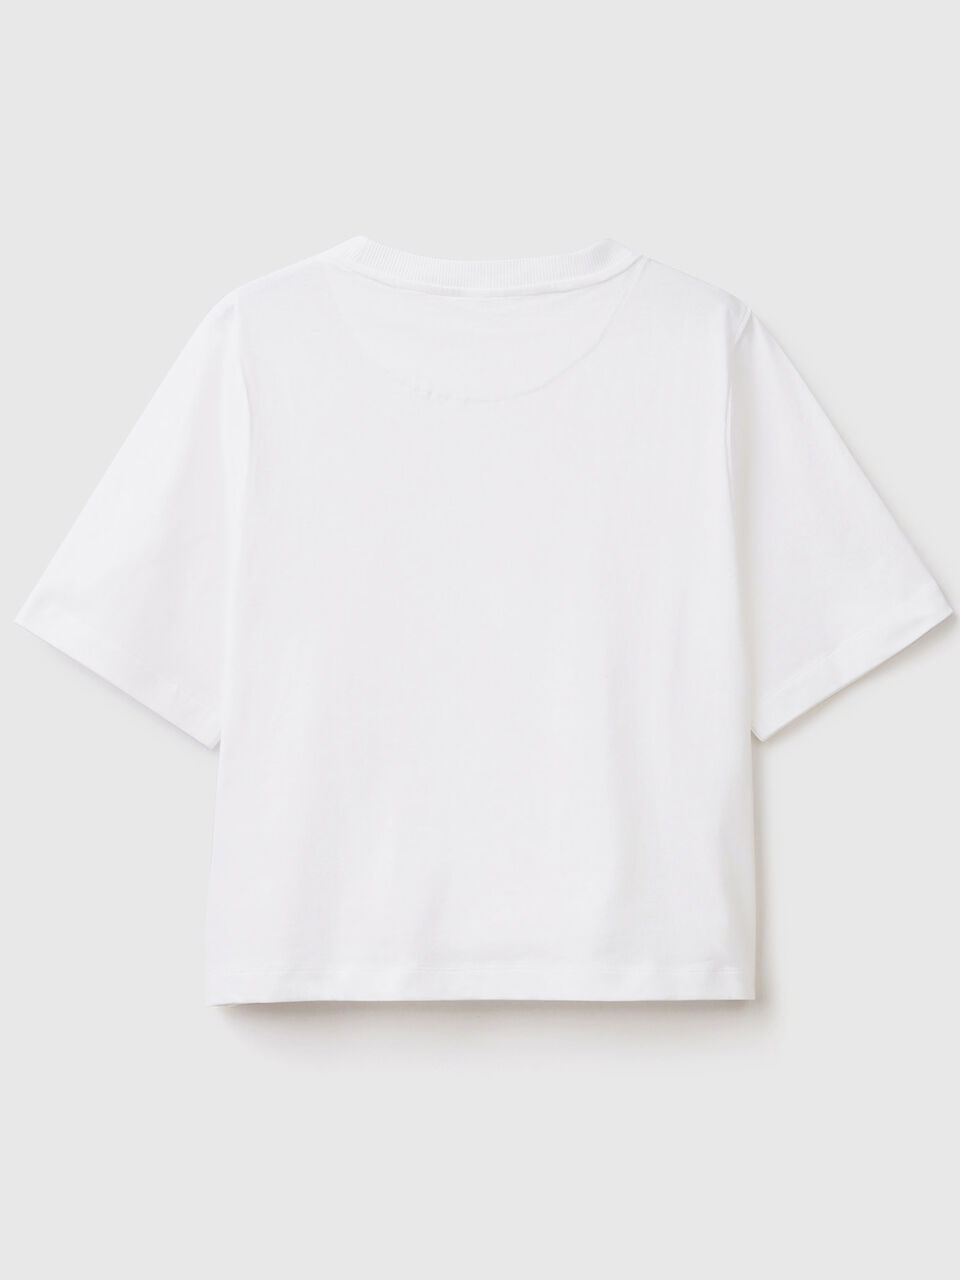 100% cotton boxy fit t-shirt